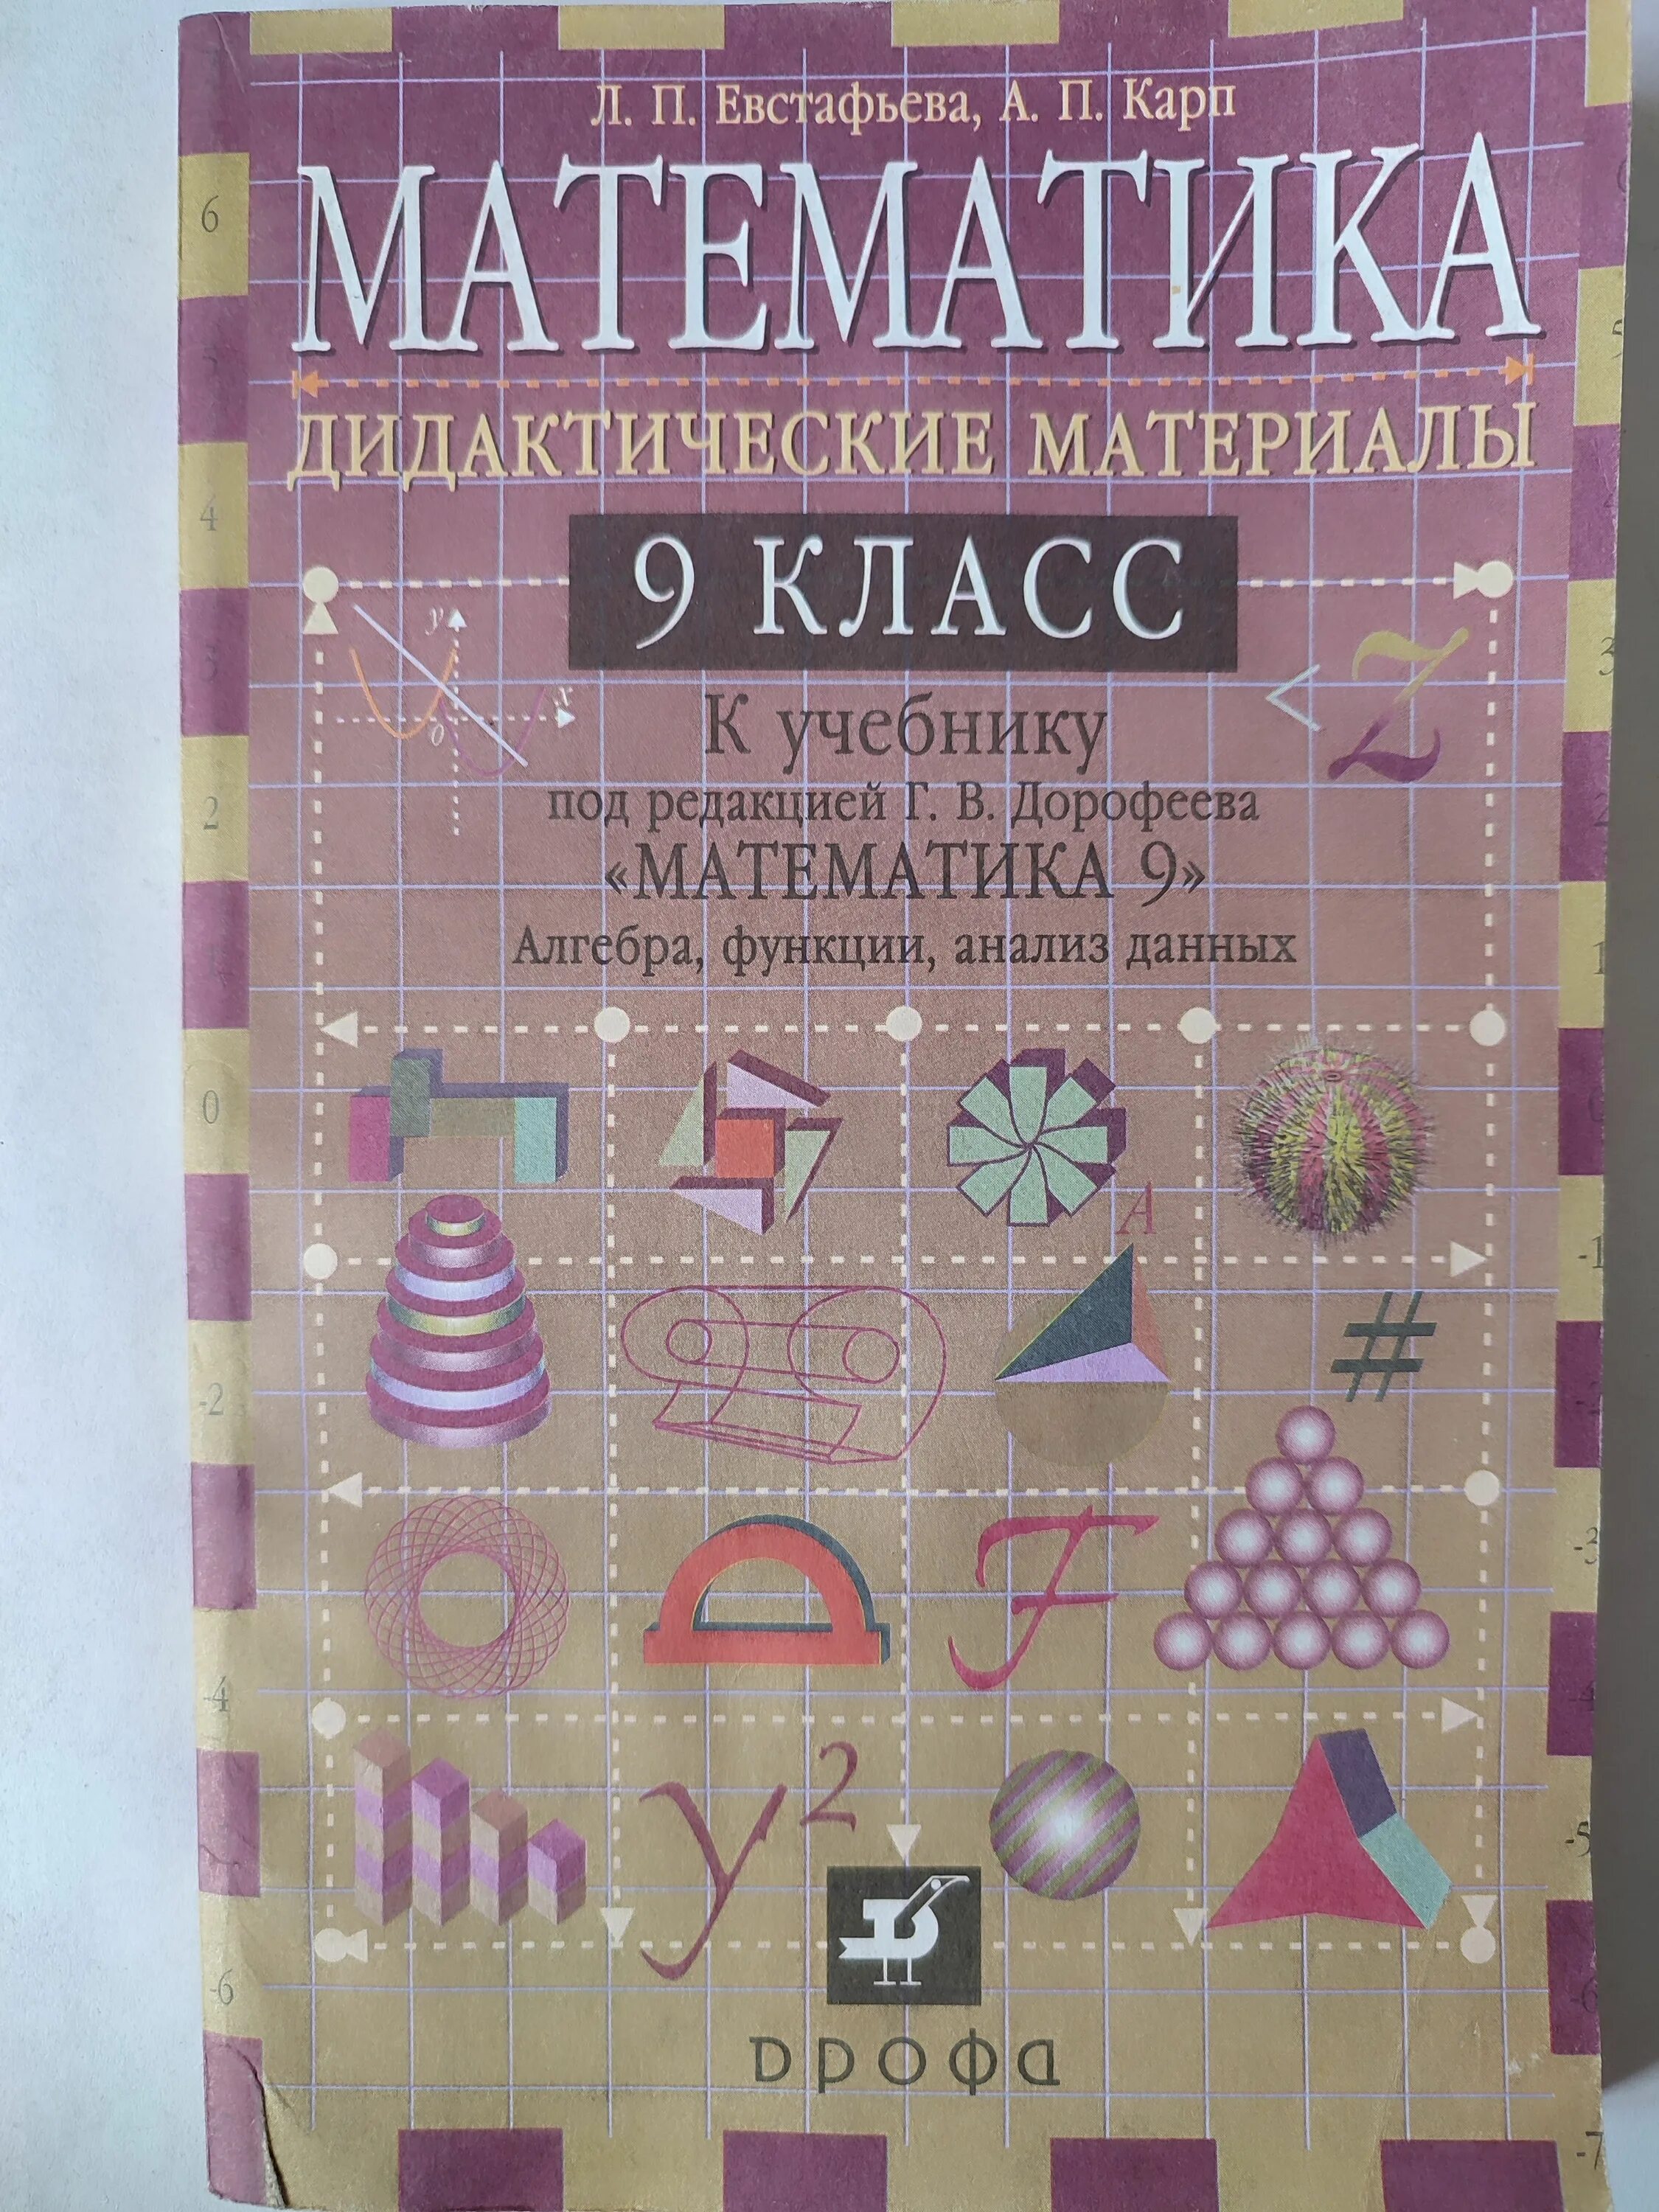 Дидактические математика 4 класс. Математика дидактические материалы 9 класс. Справочник для математики 9 класс. Математика 9 класс материал. Математика 9 класс учебник.